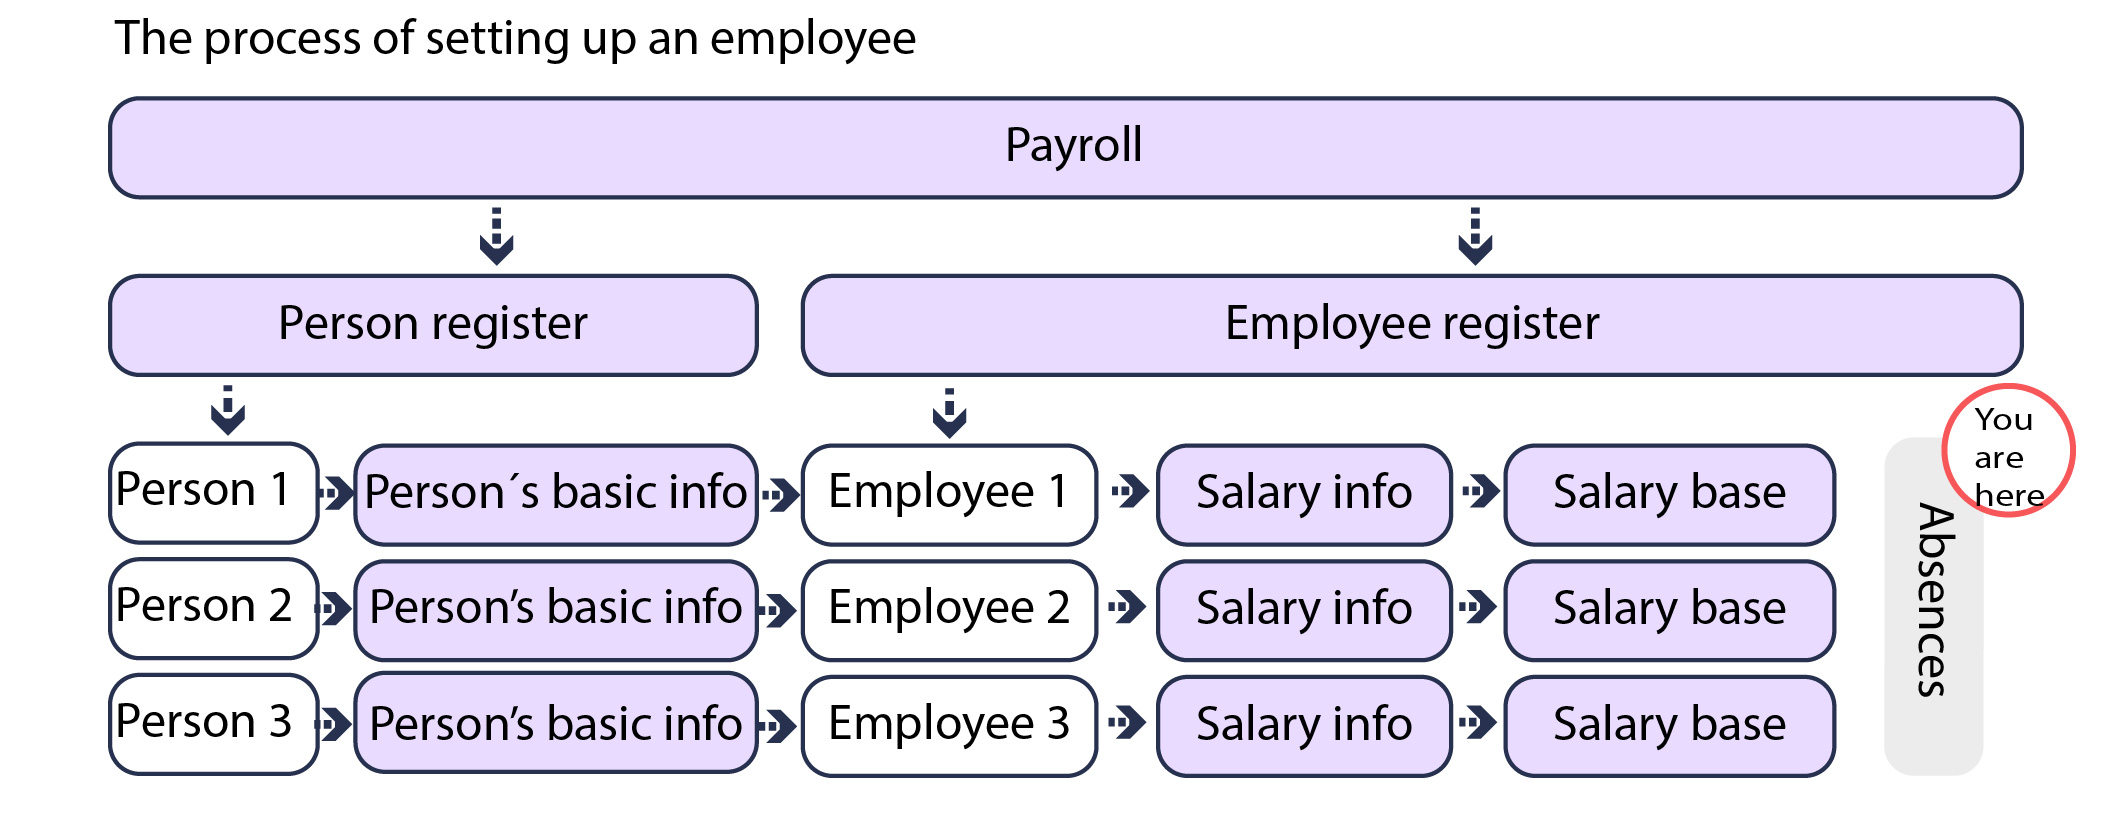 poissaolot_en_the_process_of_setting_up_an_employee_en.jpg